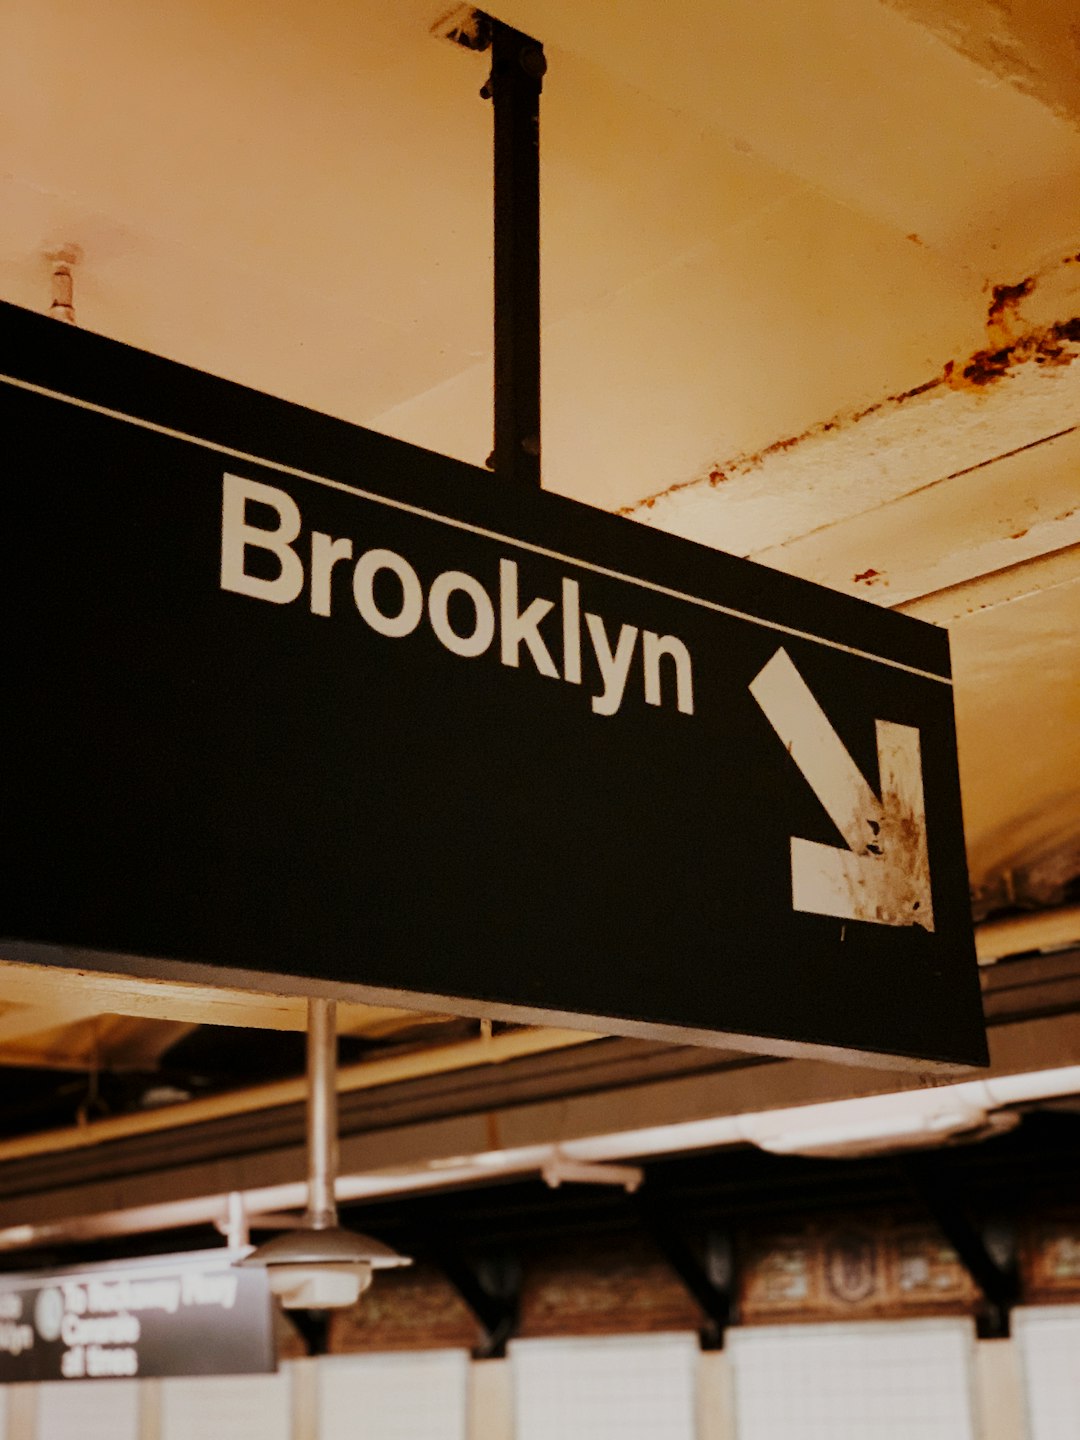 Brooklyn signage